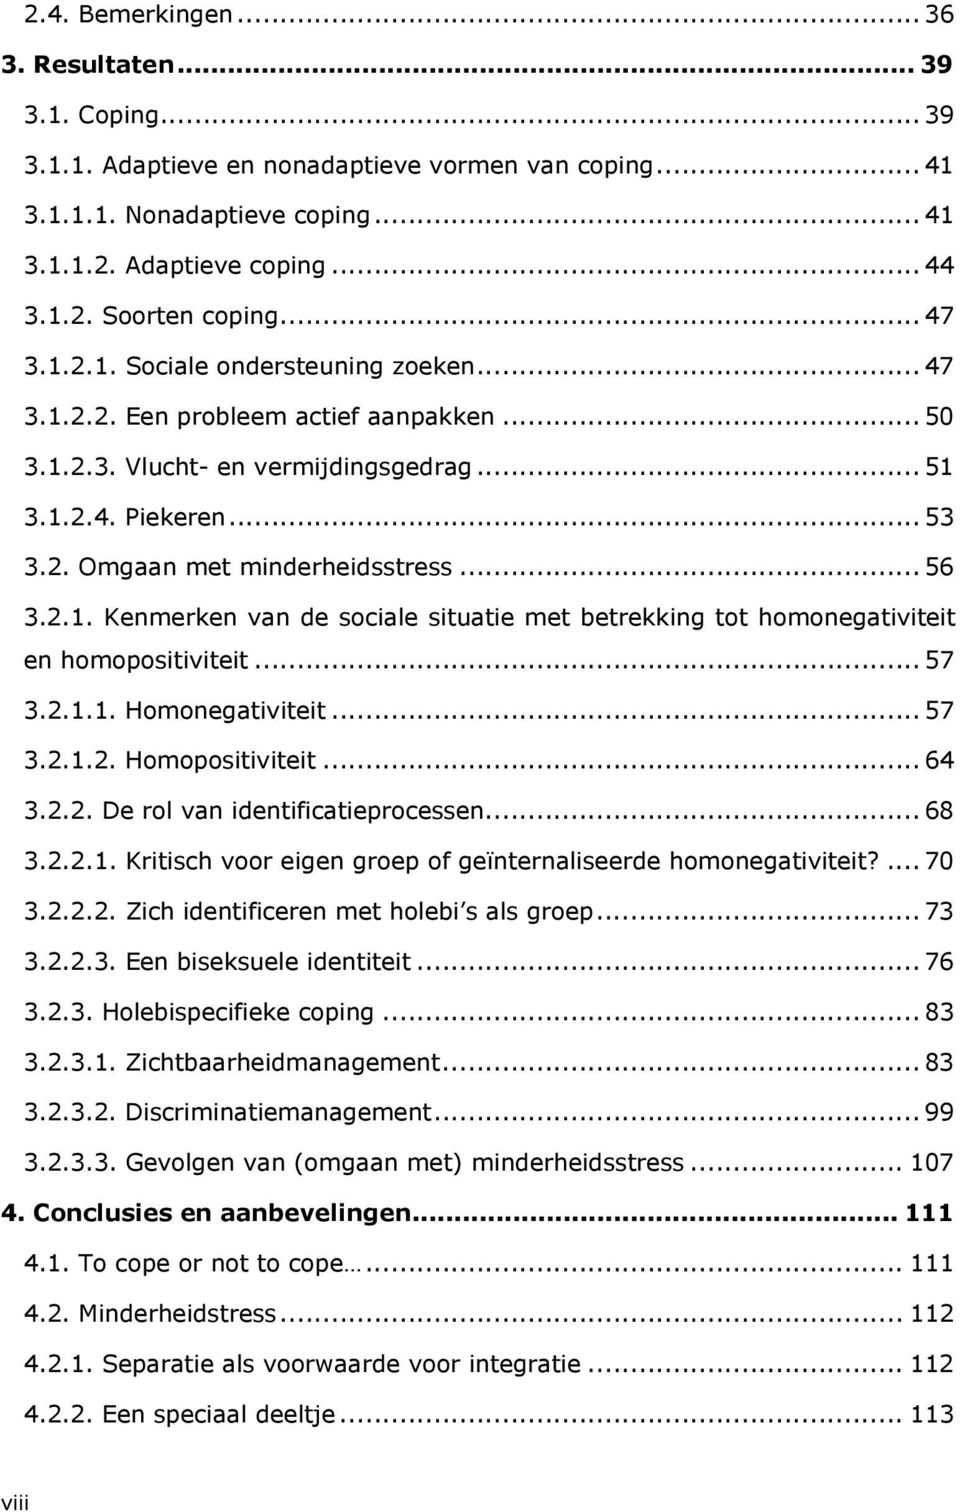 .. 56 3.2.1. Kenmerken van de sociale situatie met betrekking tot homonegativiteit en homopositiviteit... 57 3.2.1.1. Homonegativiteit... 57 3.2.1.2. Homopositiviteit... 64 3.2.2. De rol van identificatieprocessen.